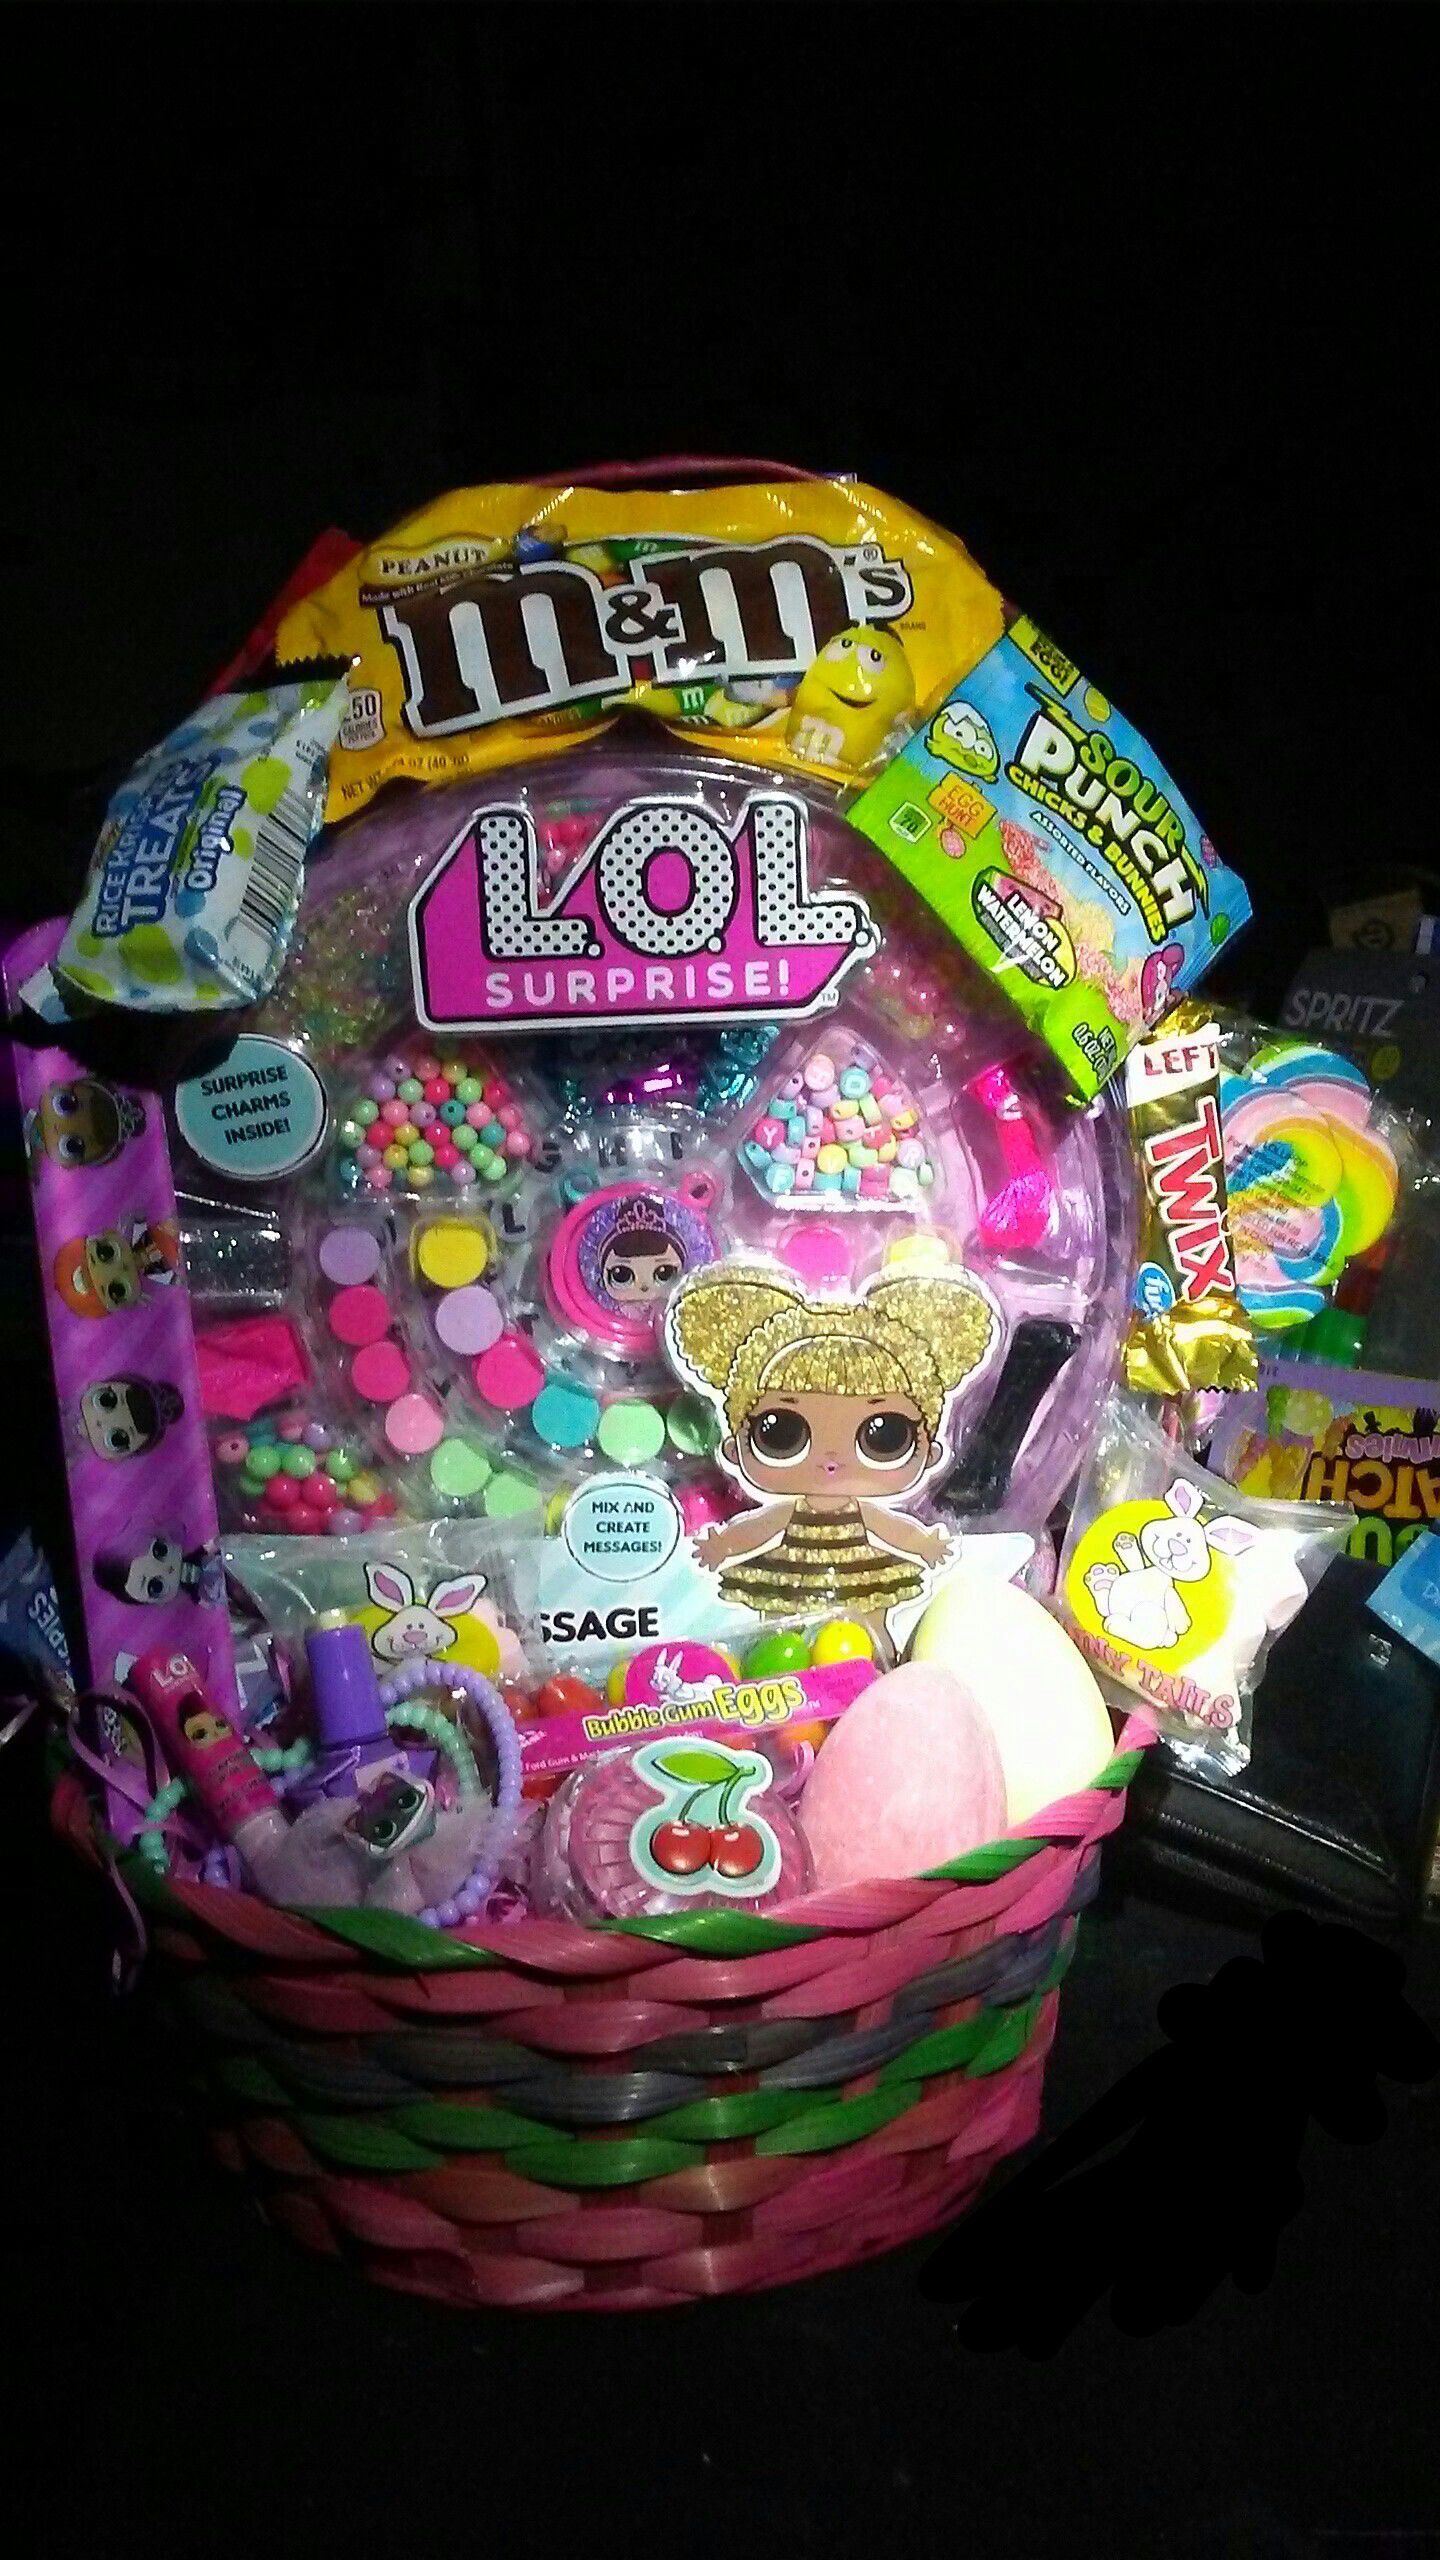 Lol Surprise Easter basket